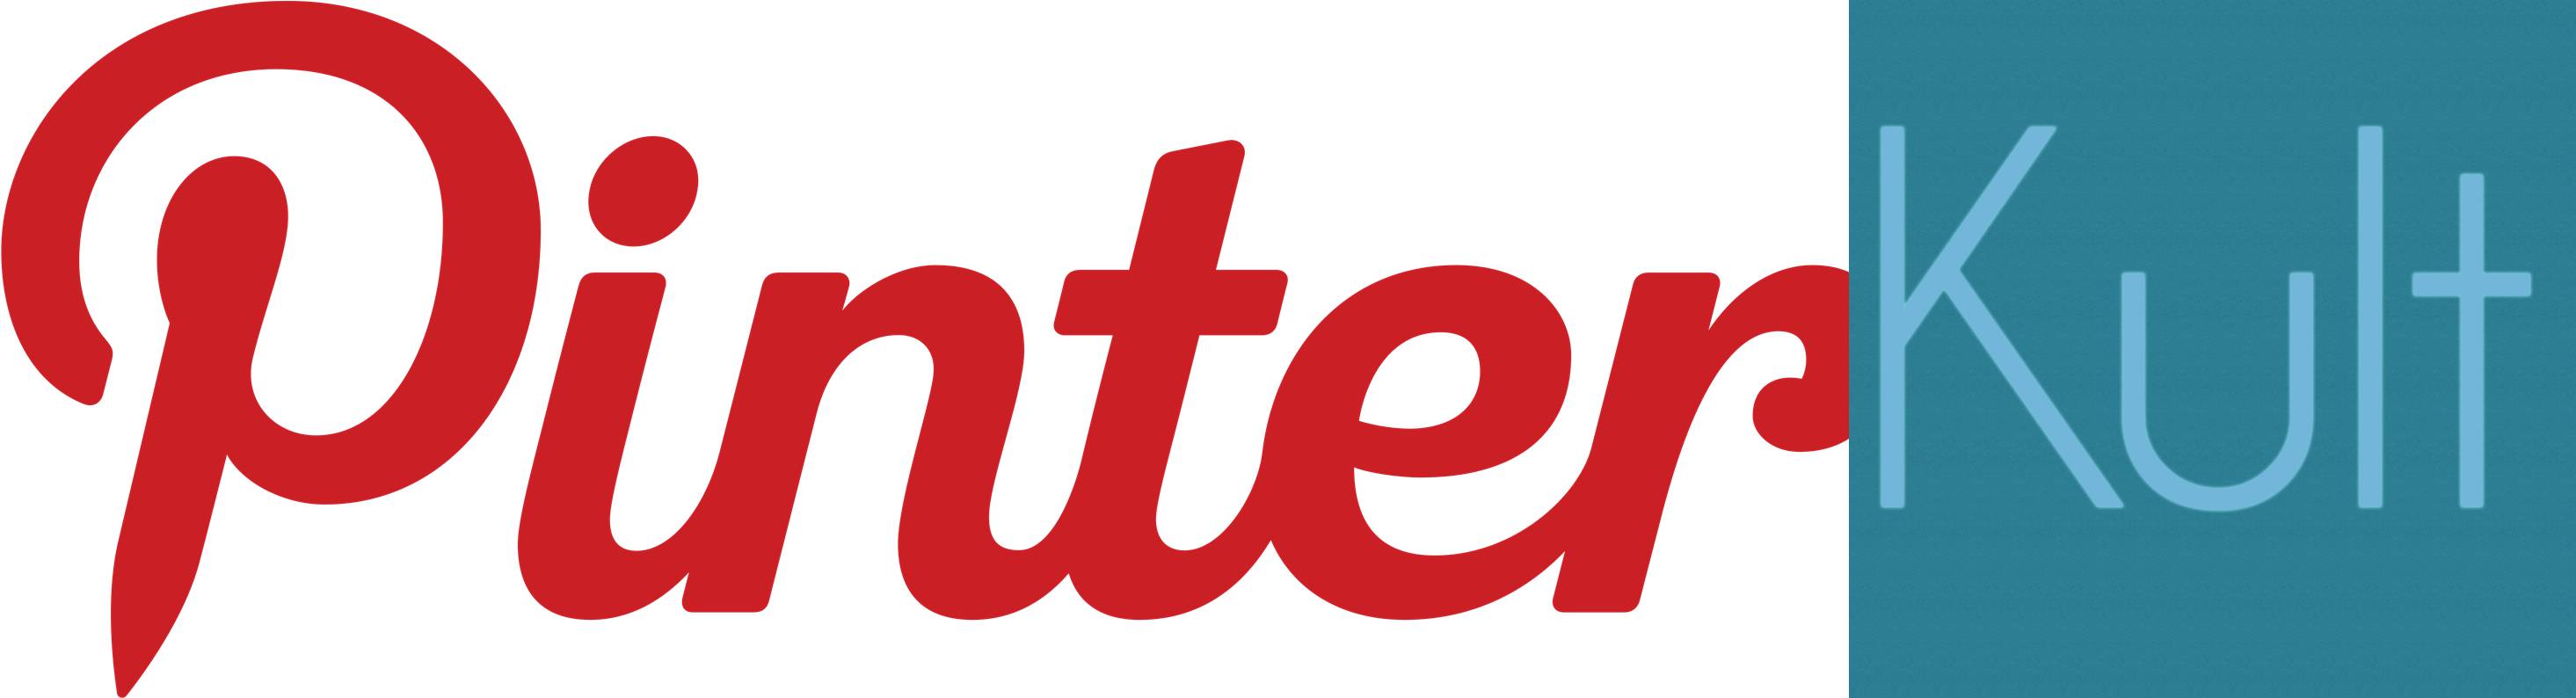 Pinterest_Logo-horz.jpg